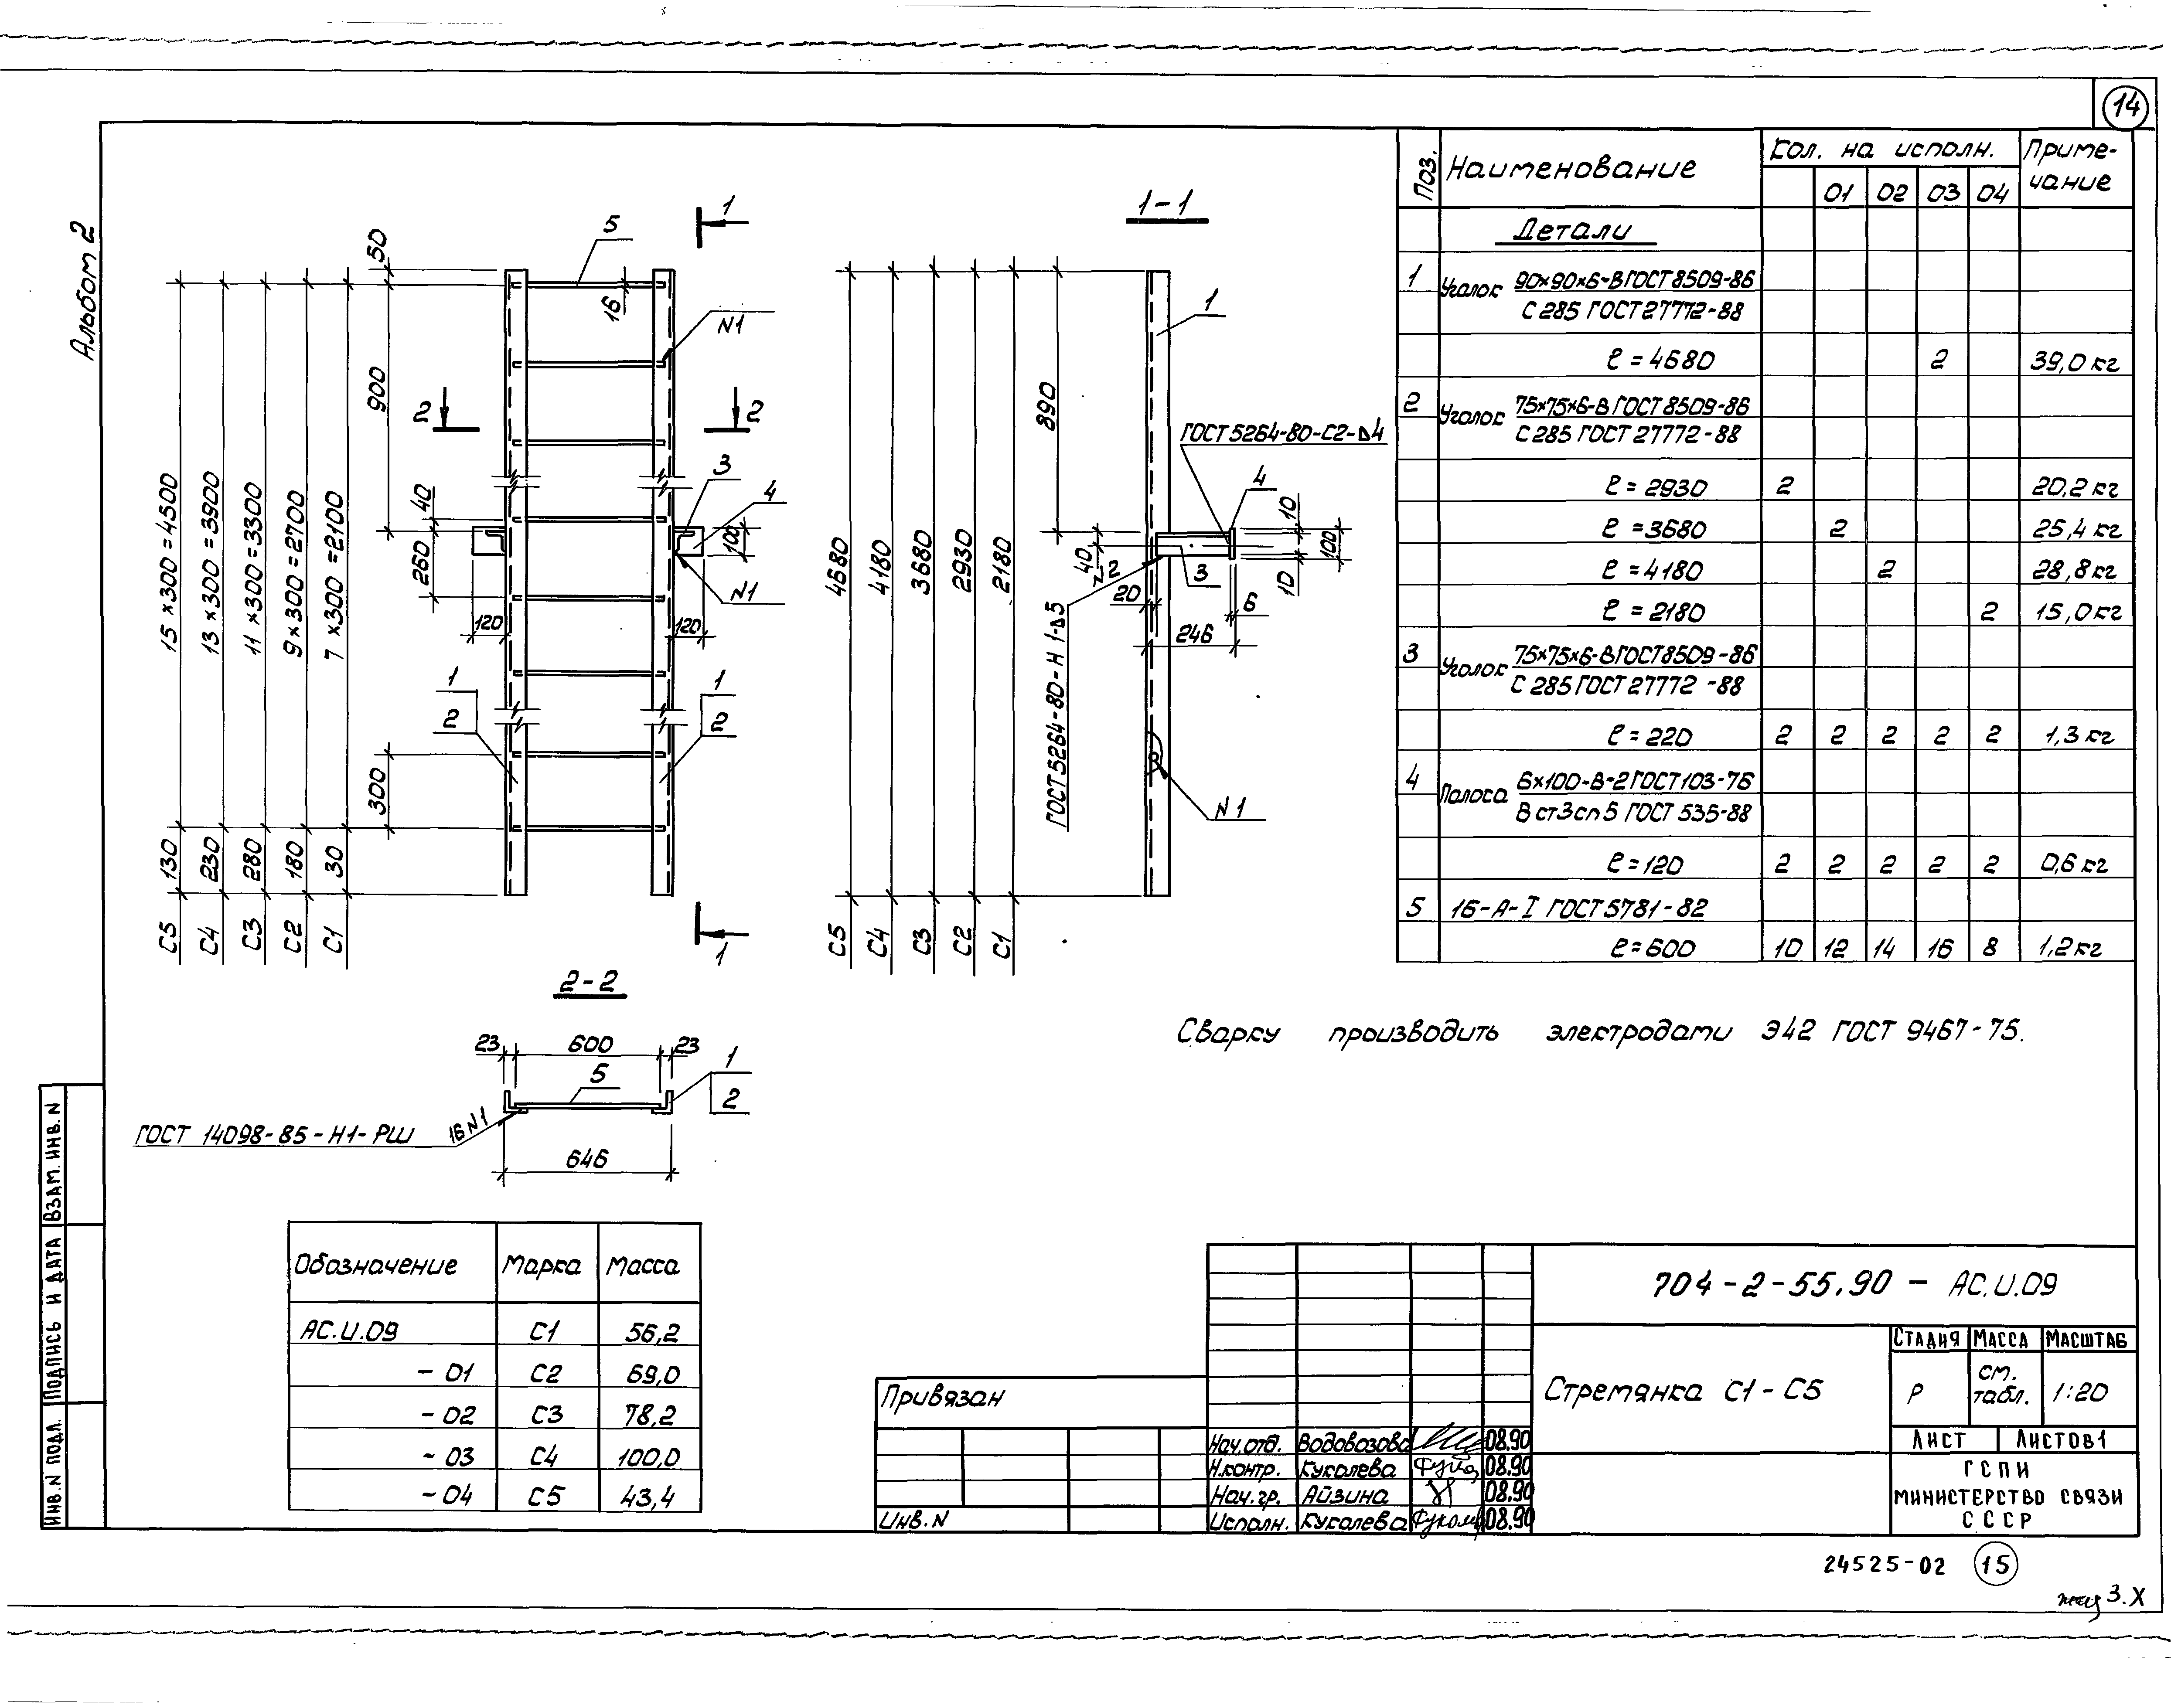 Типовой проект 704-2-55.90